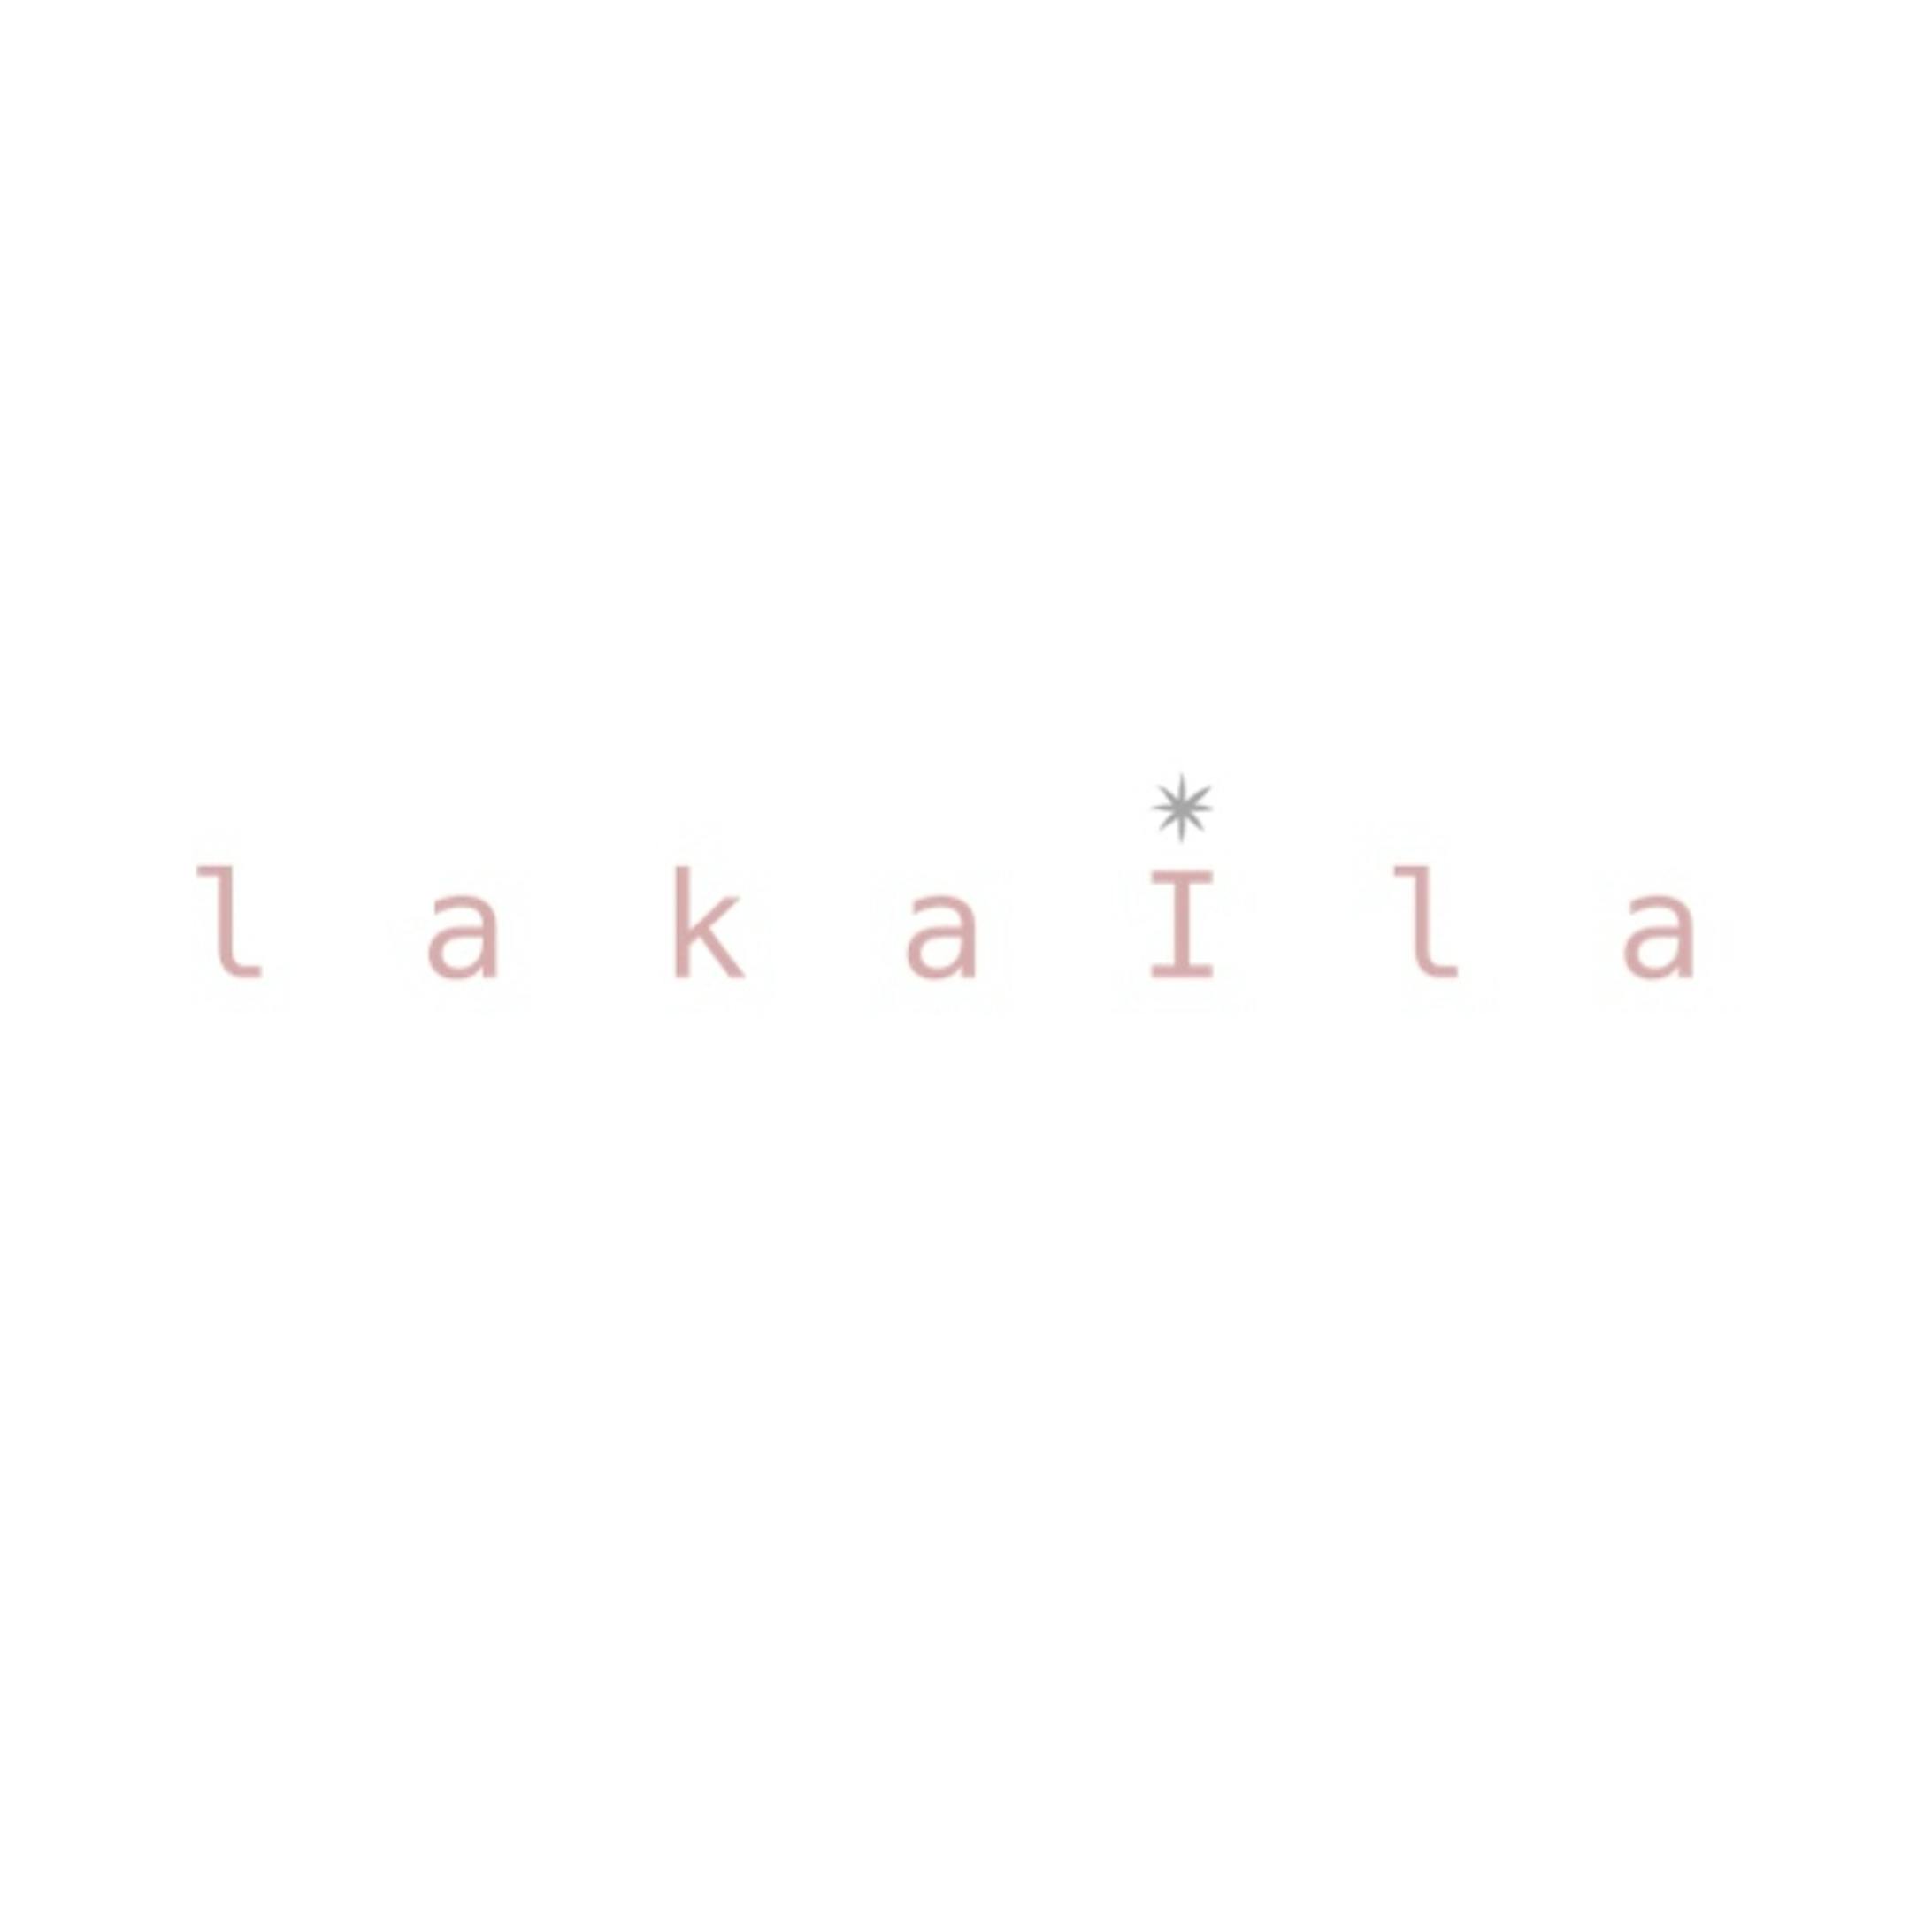 【Lakaira】パッケージとロゴデザイン-23